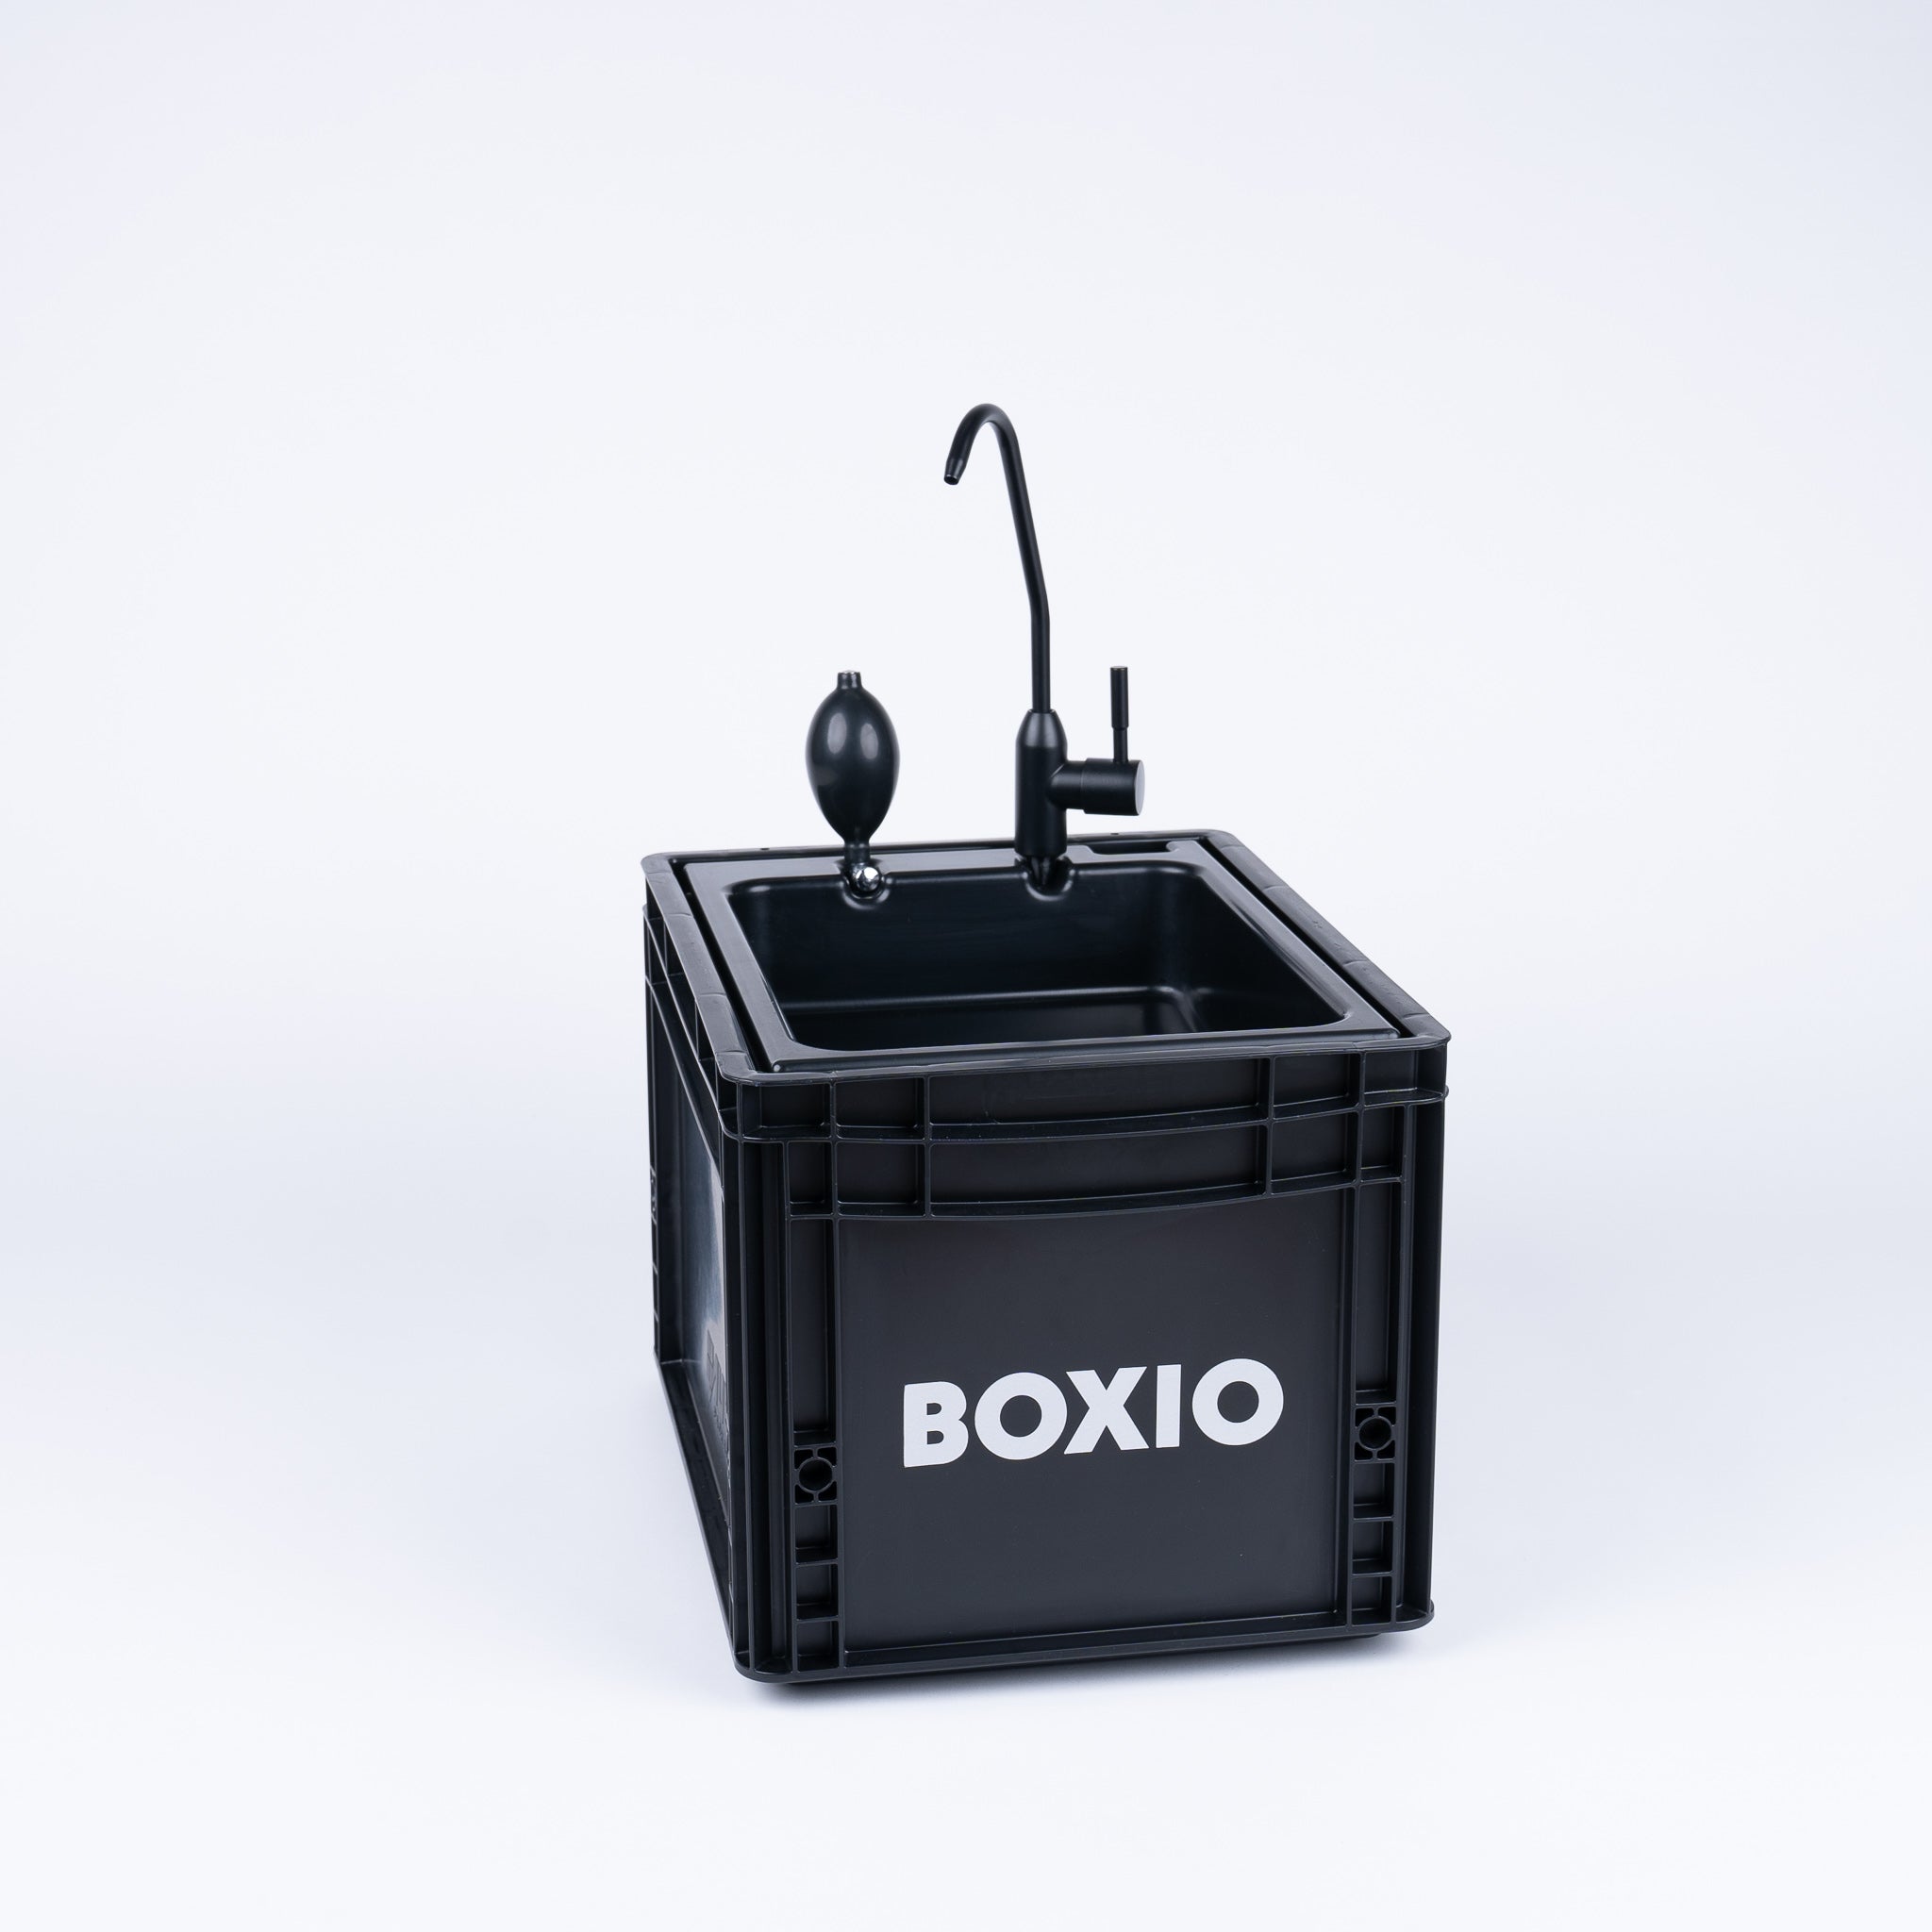 BOXIO SANITARIO - Set completo con inodoro desviador de orina, lavabo móvil y accesorios